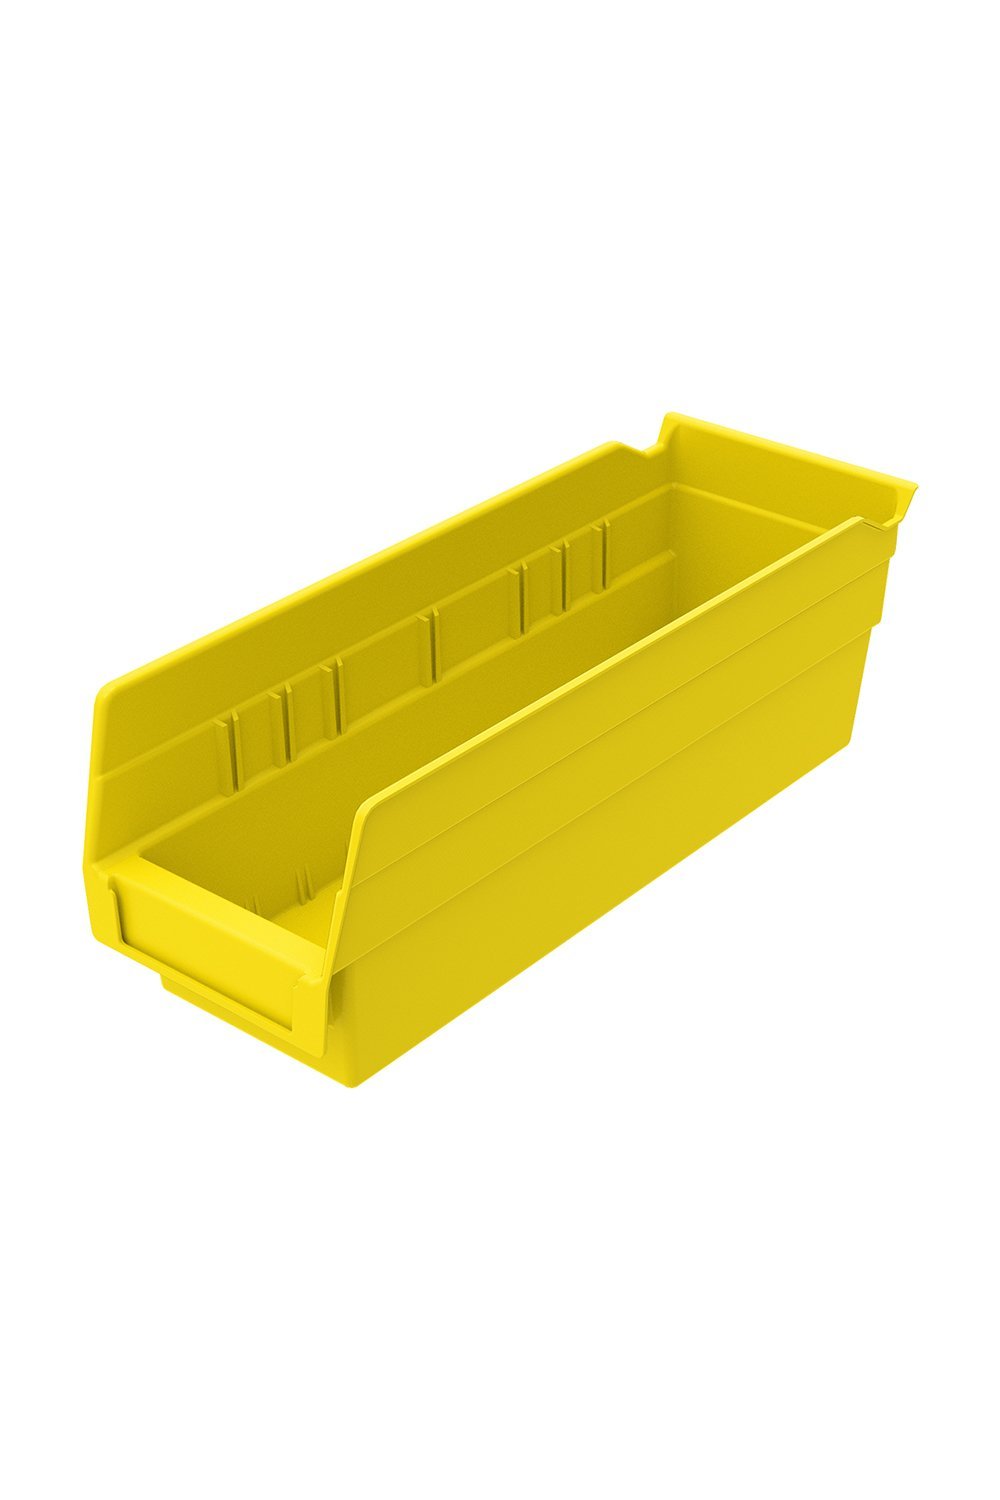 Shelf Bin for 12"D Shelves Bins & Containers Acart 11-5/8'' x 4-1/8'' x 4'' Yellow 